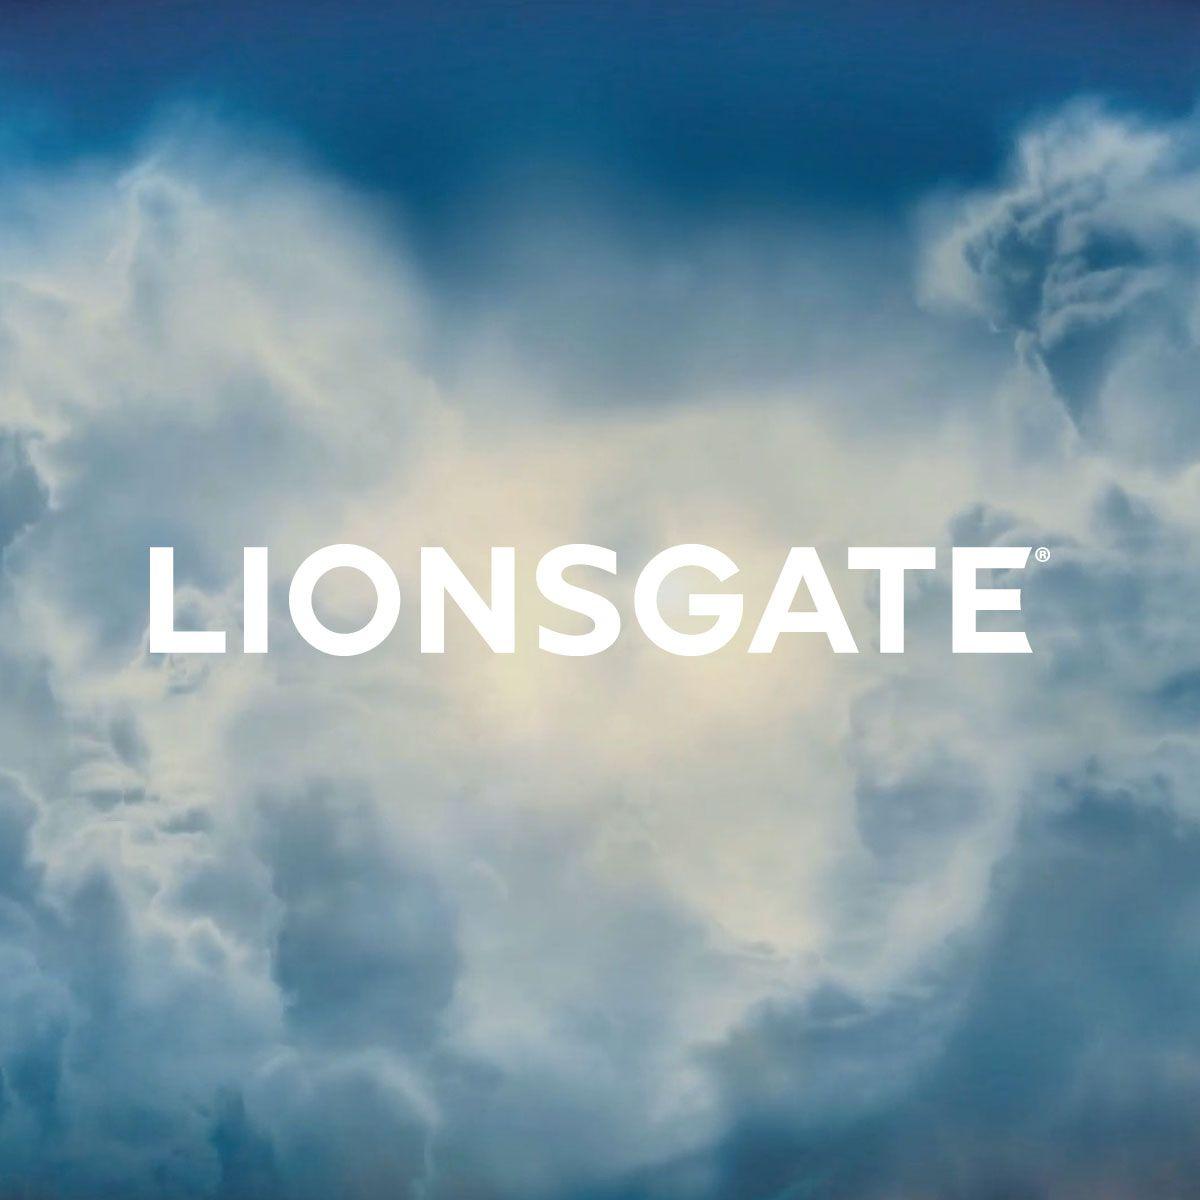 Lionsgate Logo - Lionsgate.com